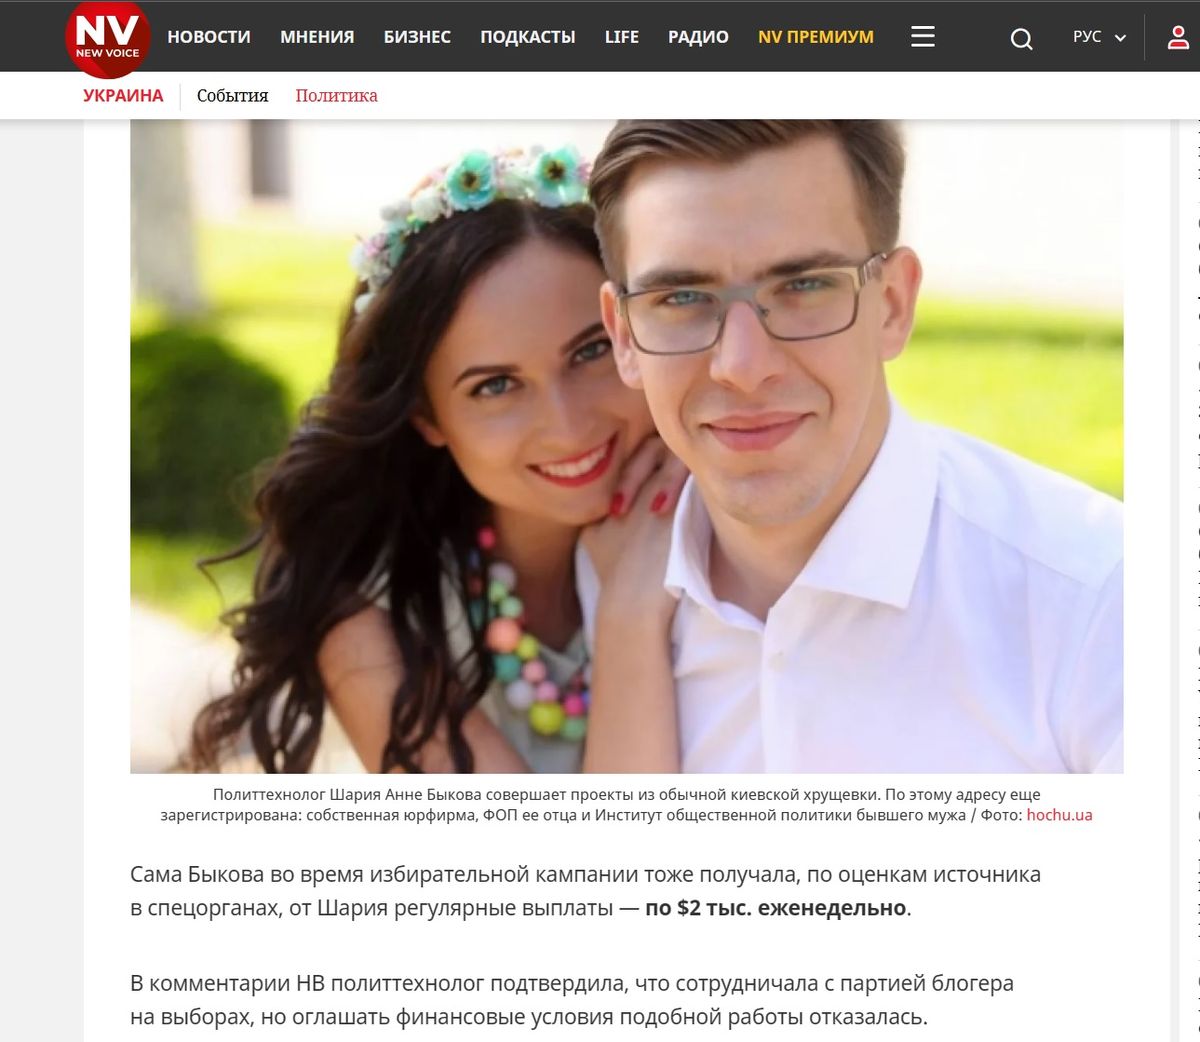 Расследование Bihus.info о платных услугах политтехнологов в пользу пророссийских сил в Украине, опубликованное одним из наиболее авторитетных украинских изданий New Voice. 